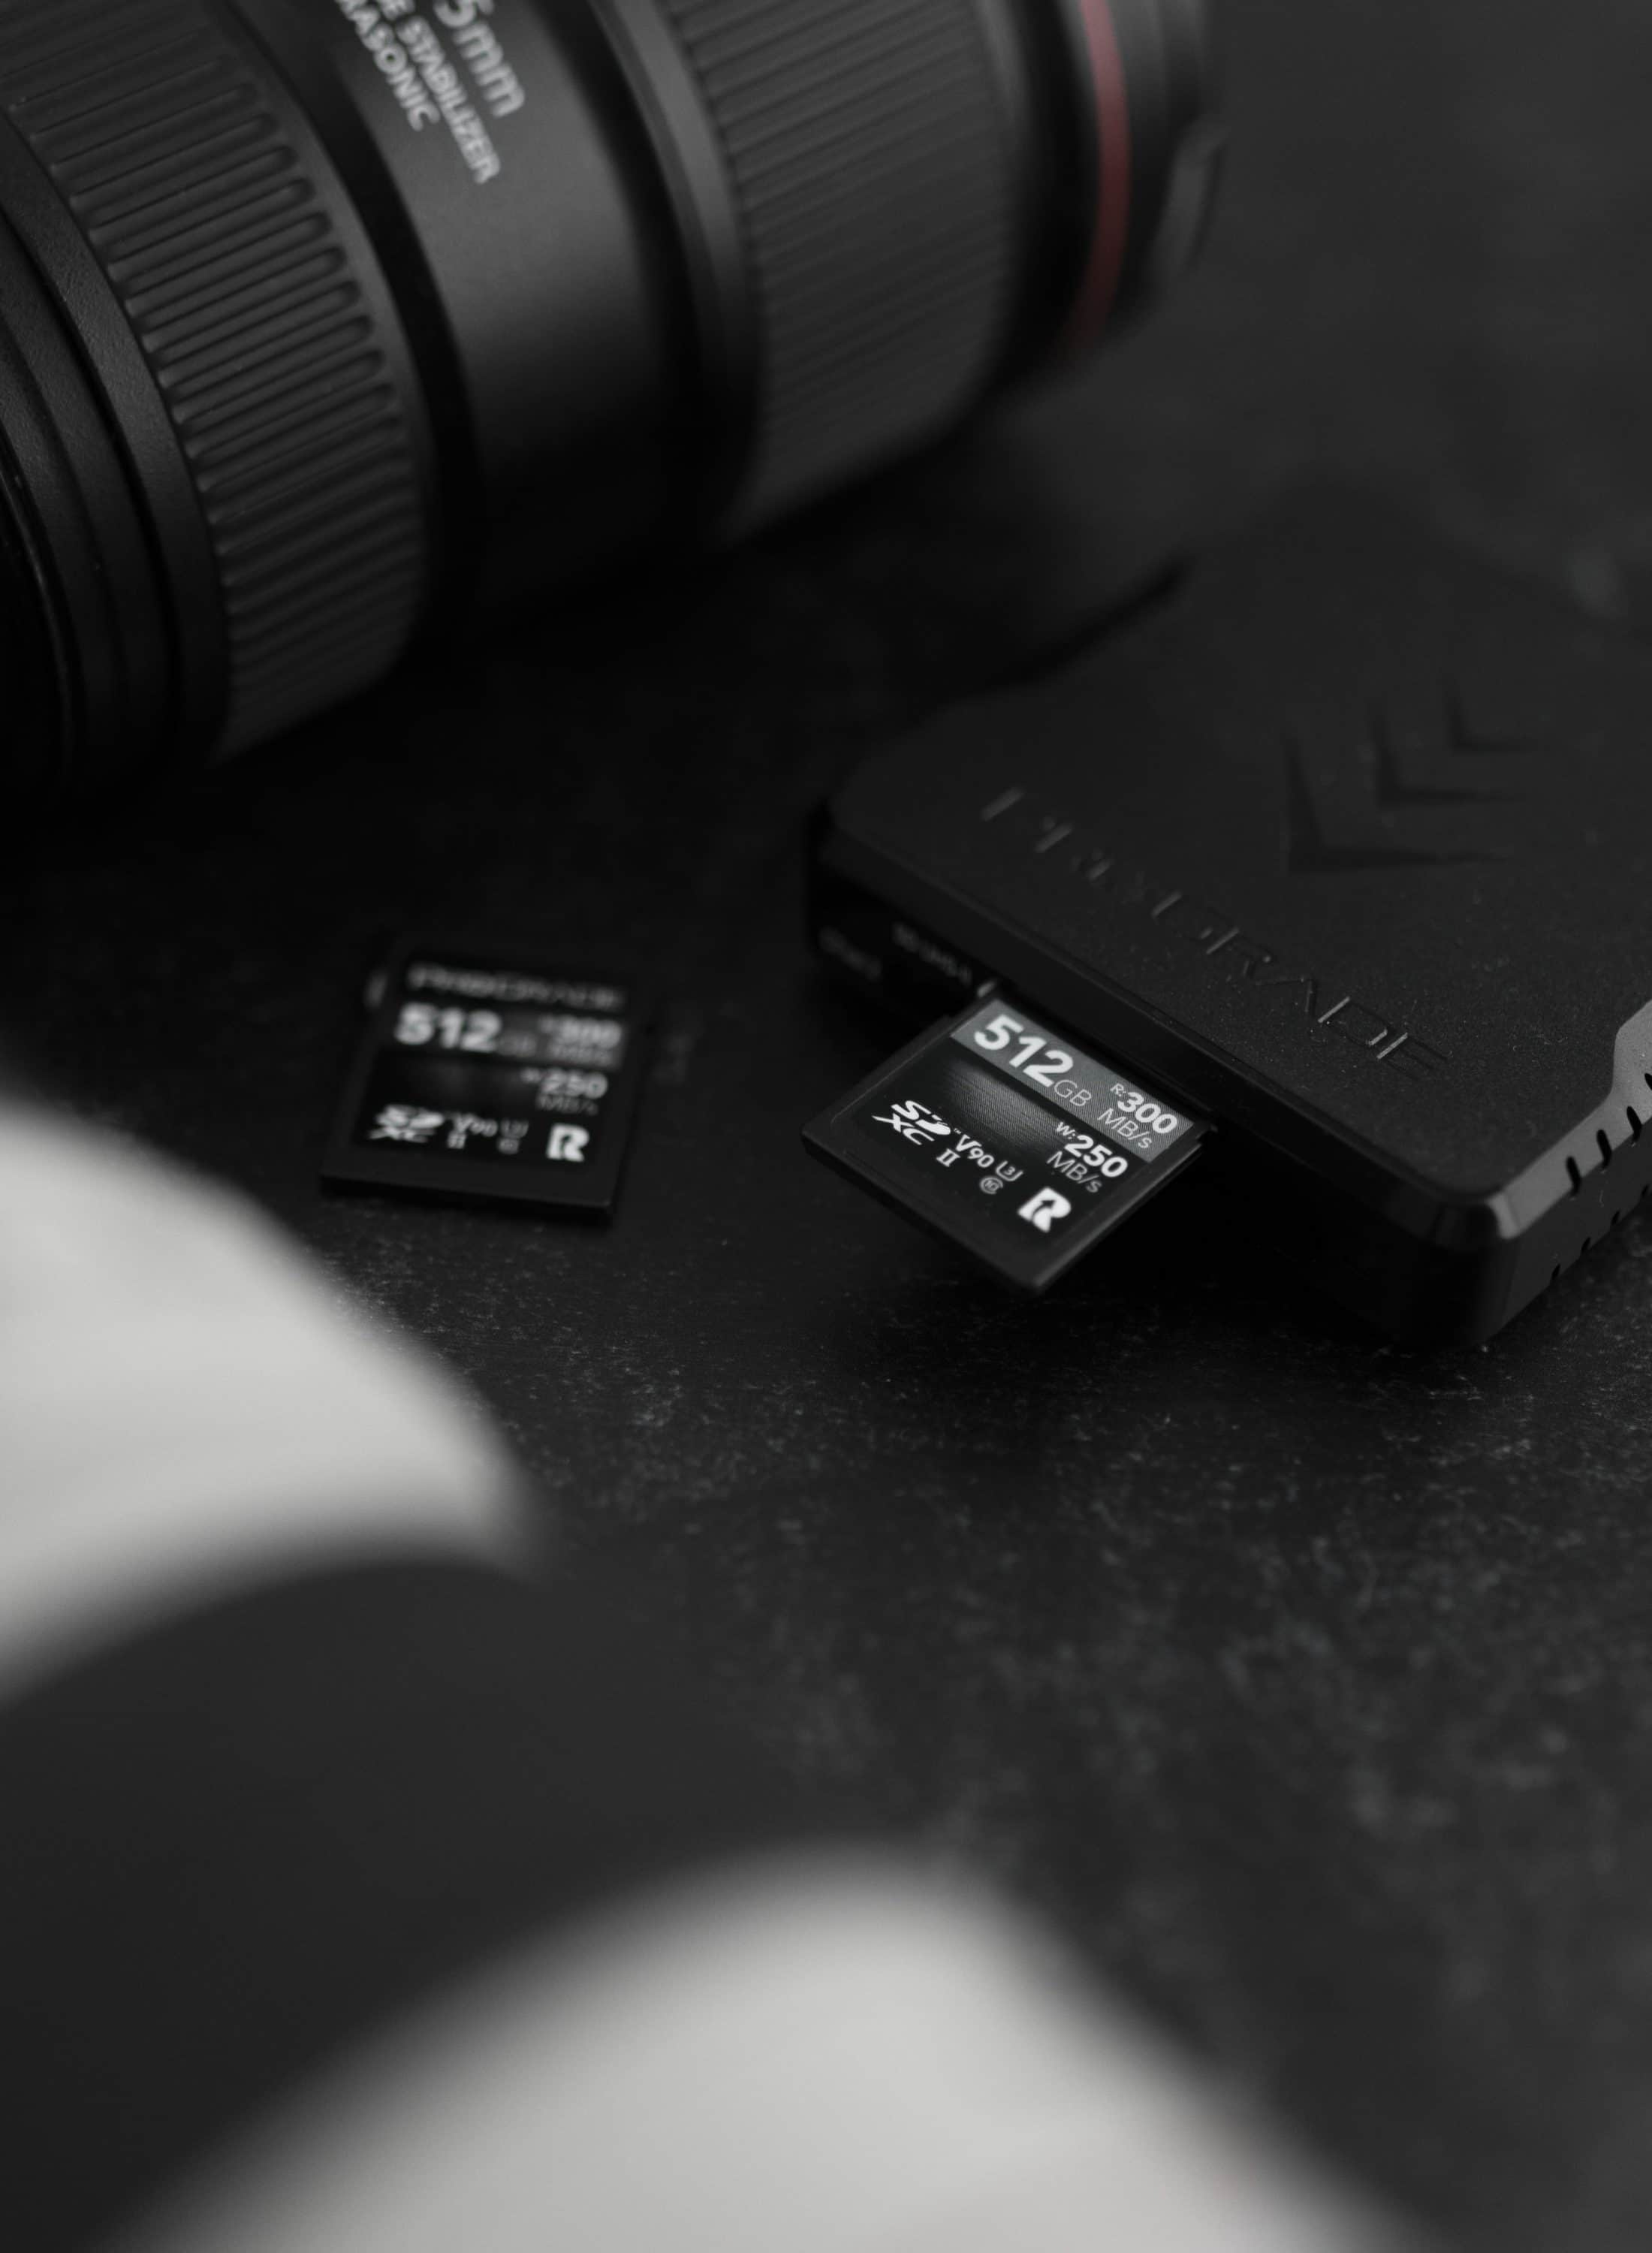 ProGrade annonce une nouvelle capacité pour sa carte SD V90